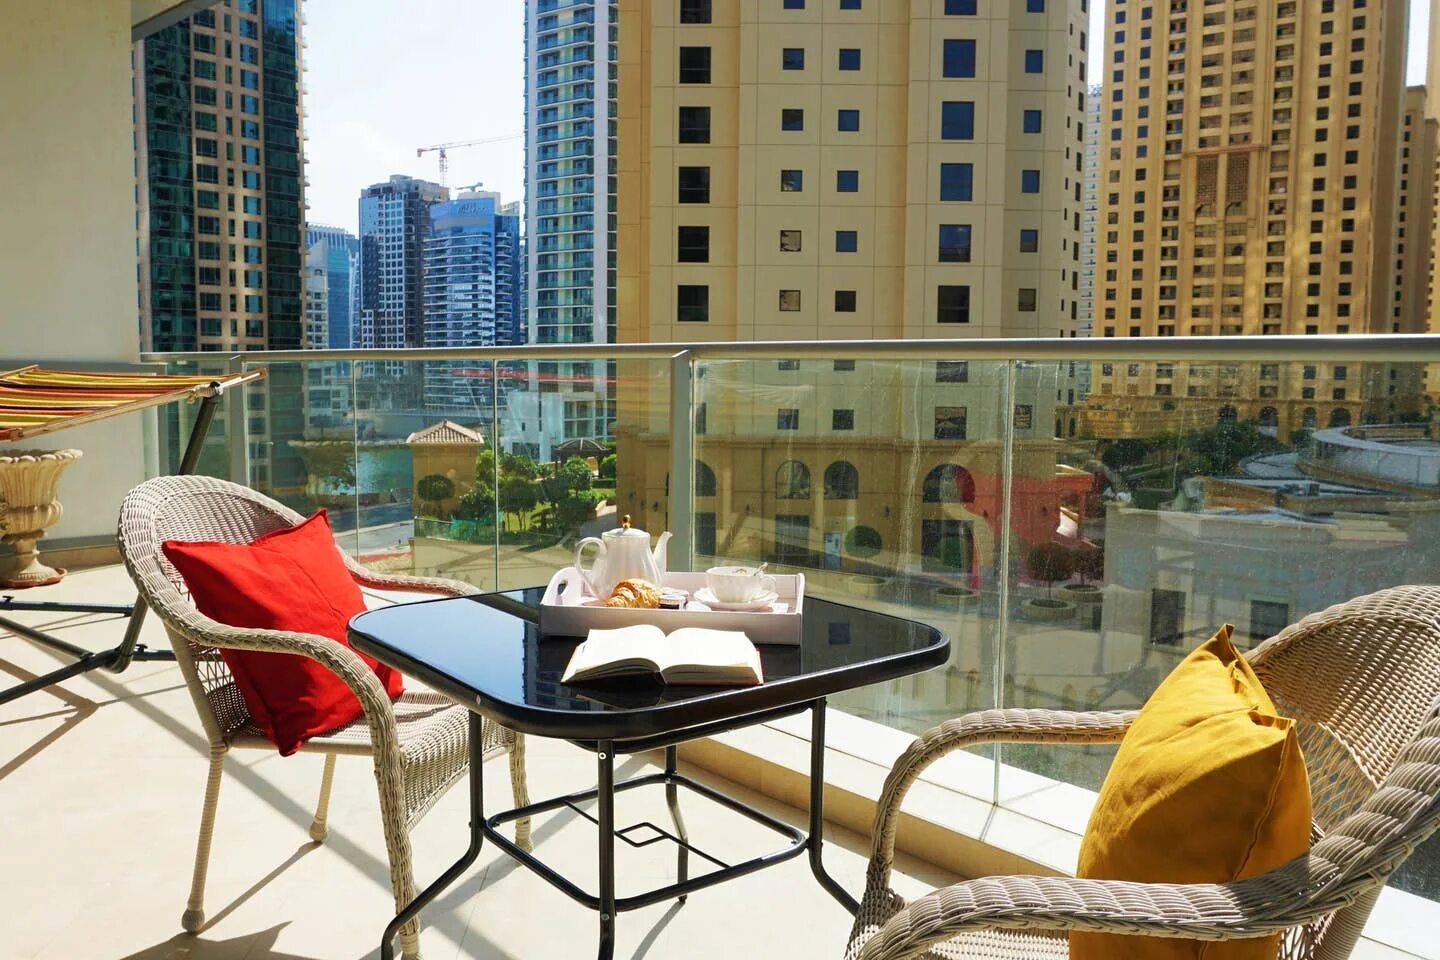 Аренда жилья в дубае. Пустая квартира в Дубае. Скоро лучшие апартаменты Дубай. Арендовать квартиру в Дубае. Дешевое жилье в Дубае.